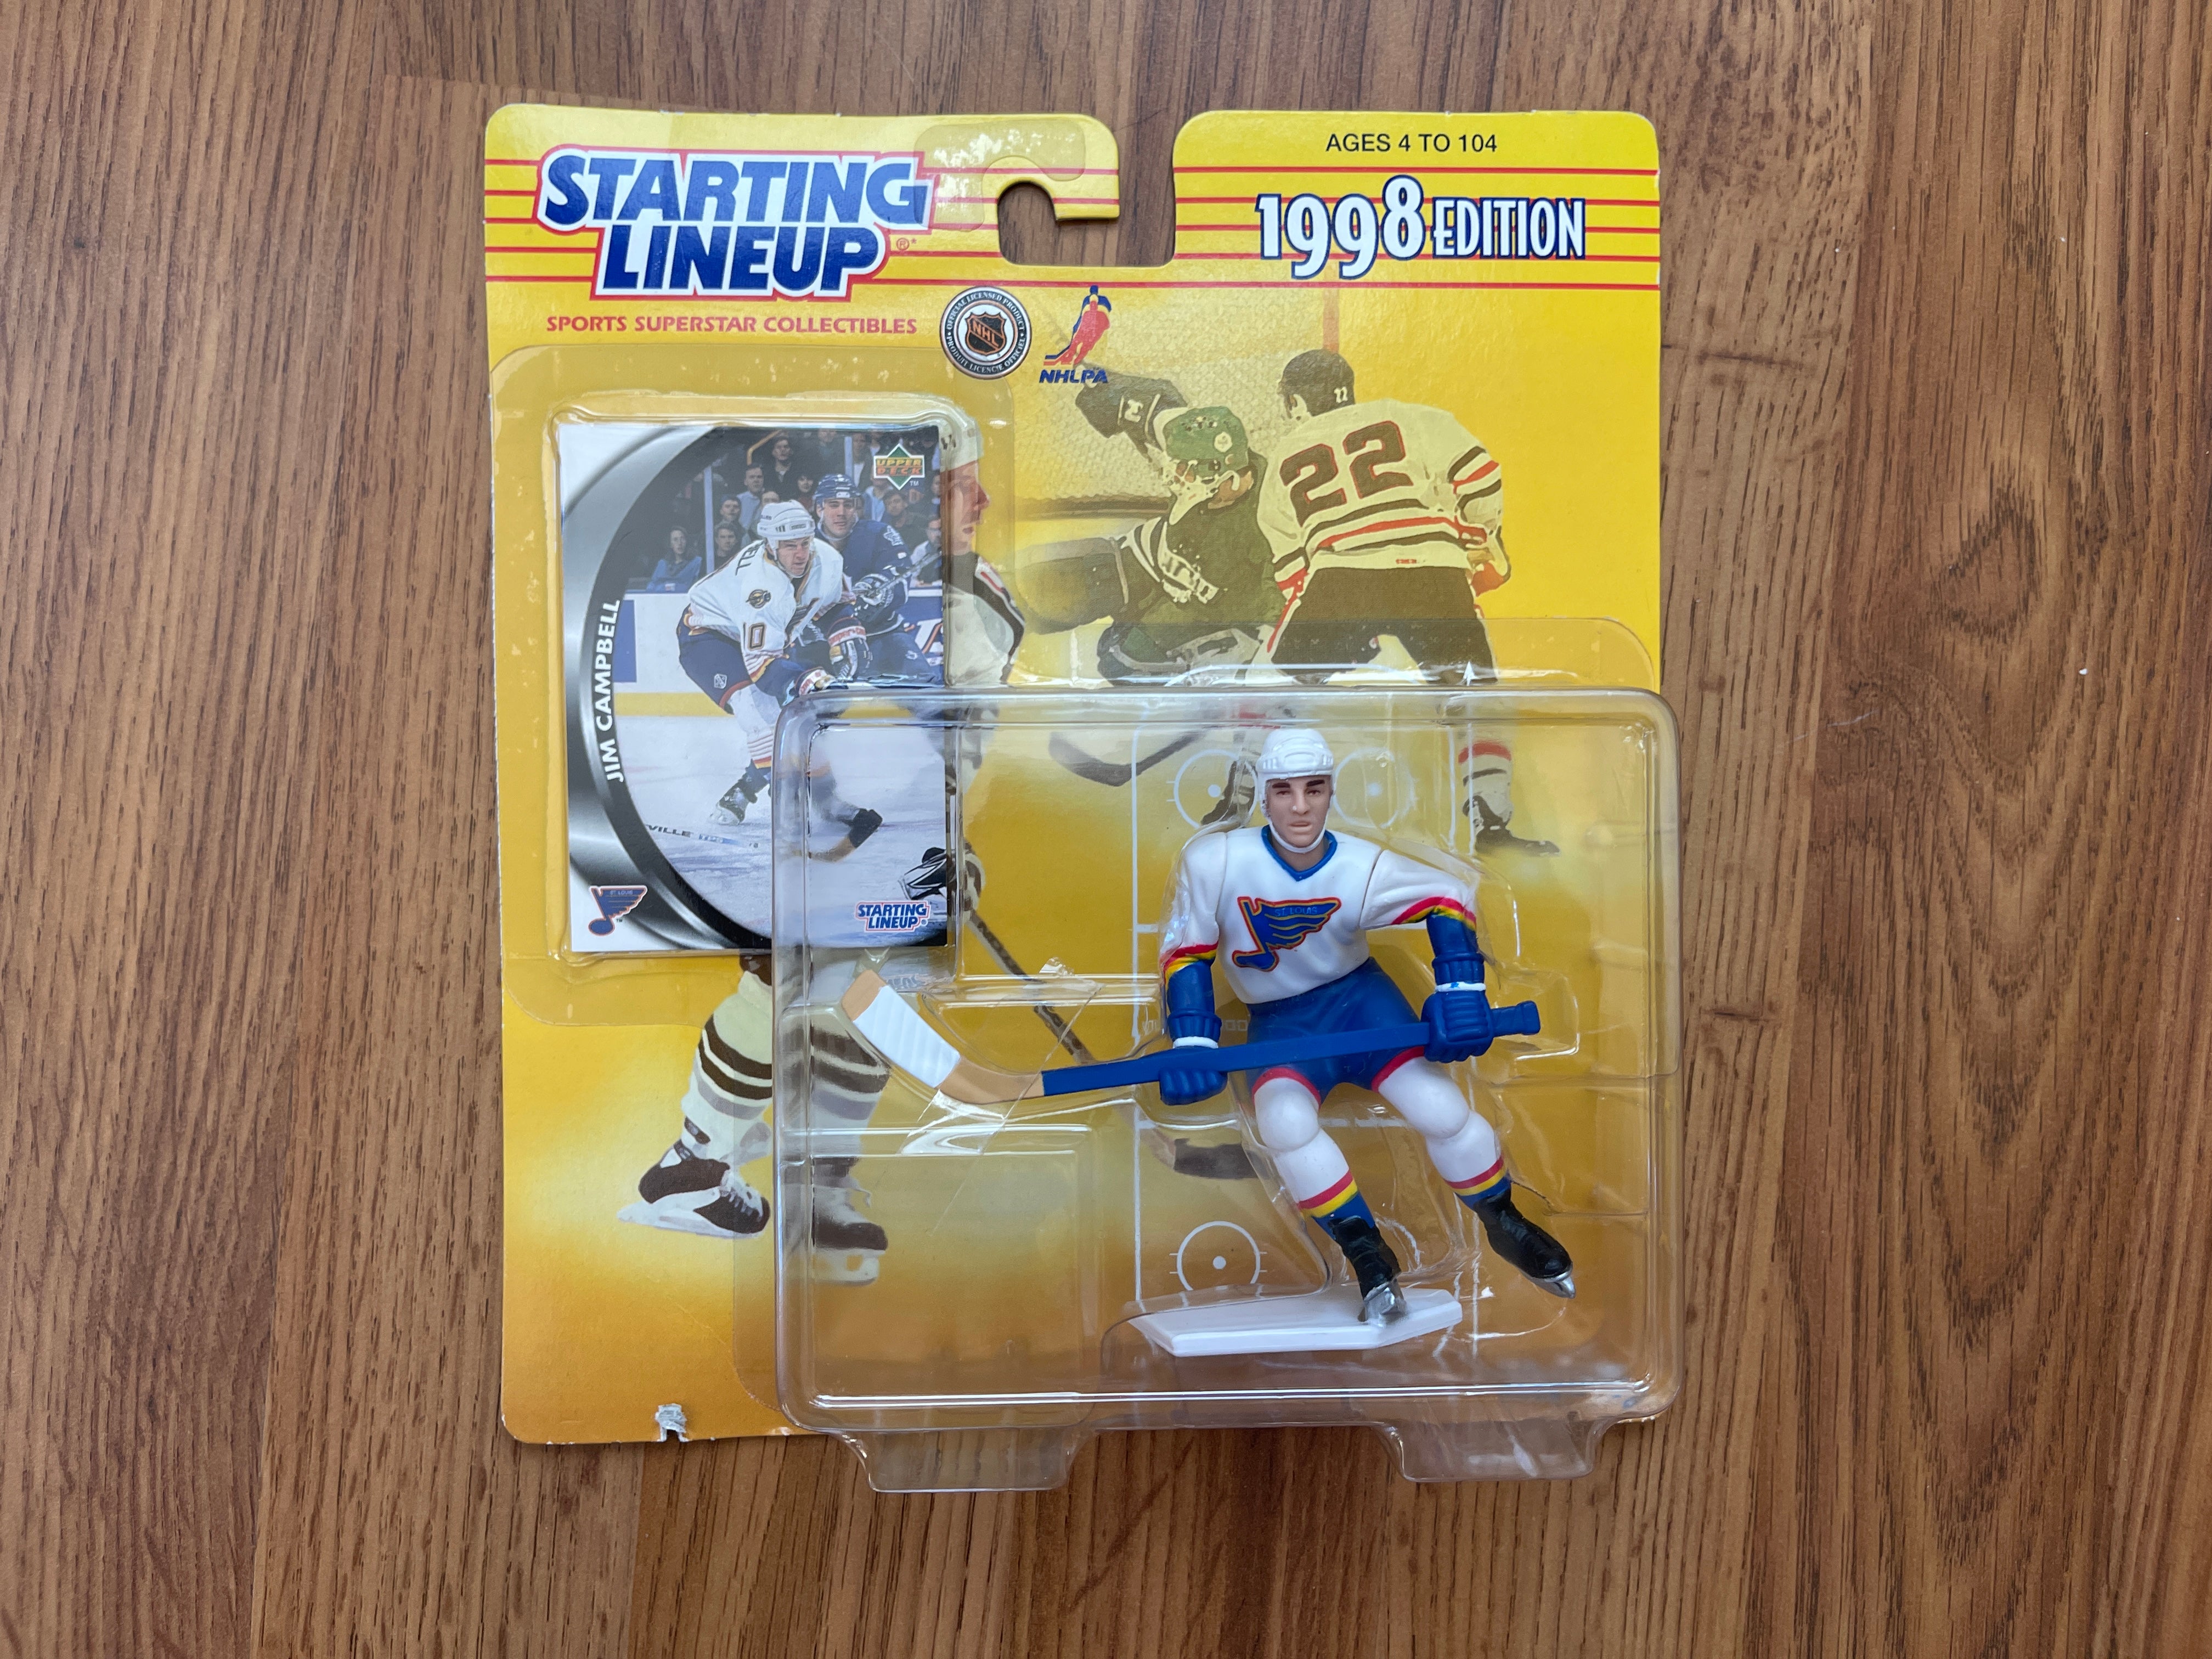 St. Louis Blues NHL Merchandise & Autographed Hockey Memorabilia